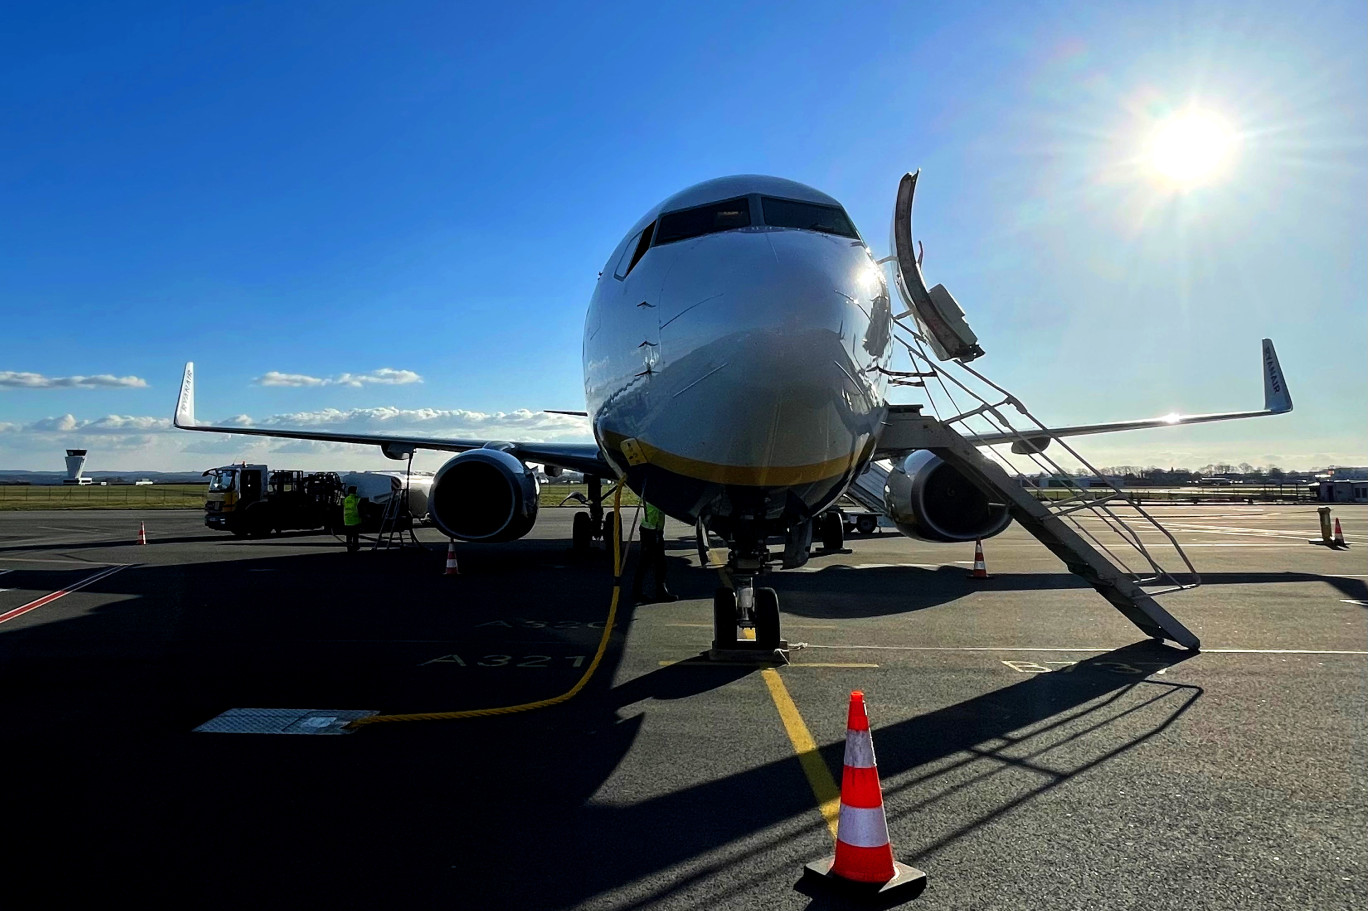 L'aéroport de Beauvais-Tillé veut se mettre en capacité d'accueillir plus de passagers, mais aussi de nouveaux types d'avions, par exemple à hydrogène. (© SAGEB - Aéroport Paris-Beauvais)